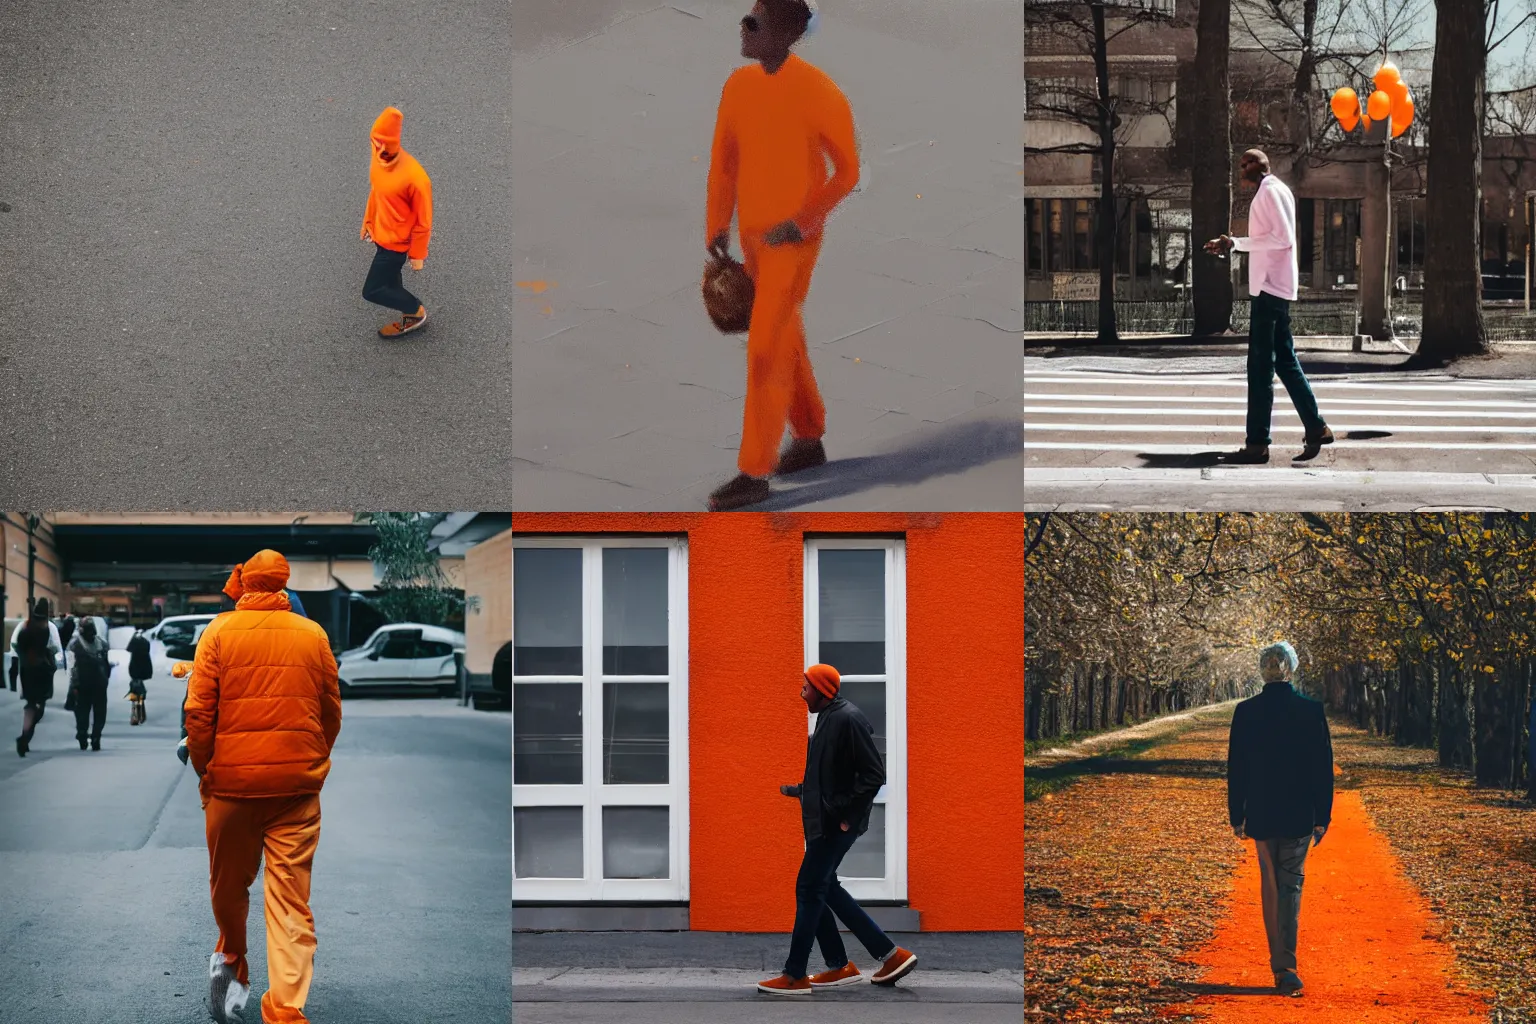 Prompt: an orange, man walking